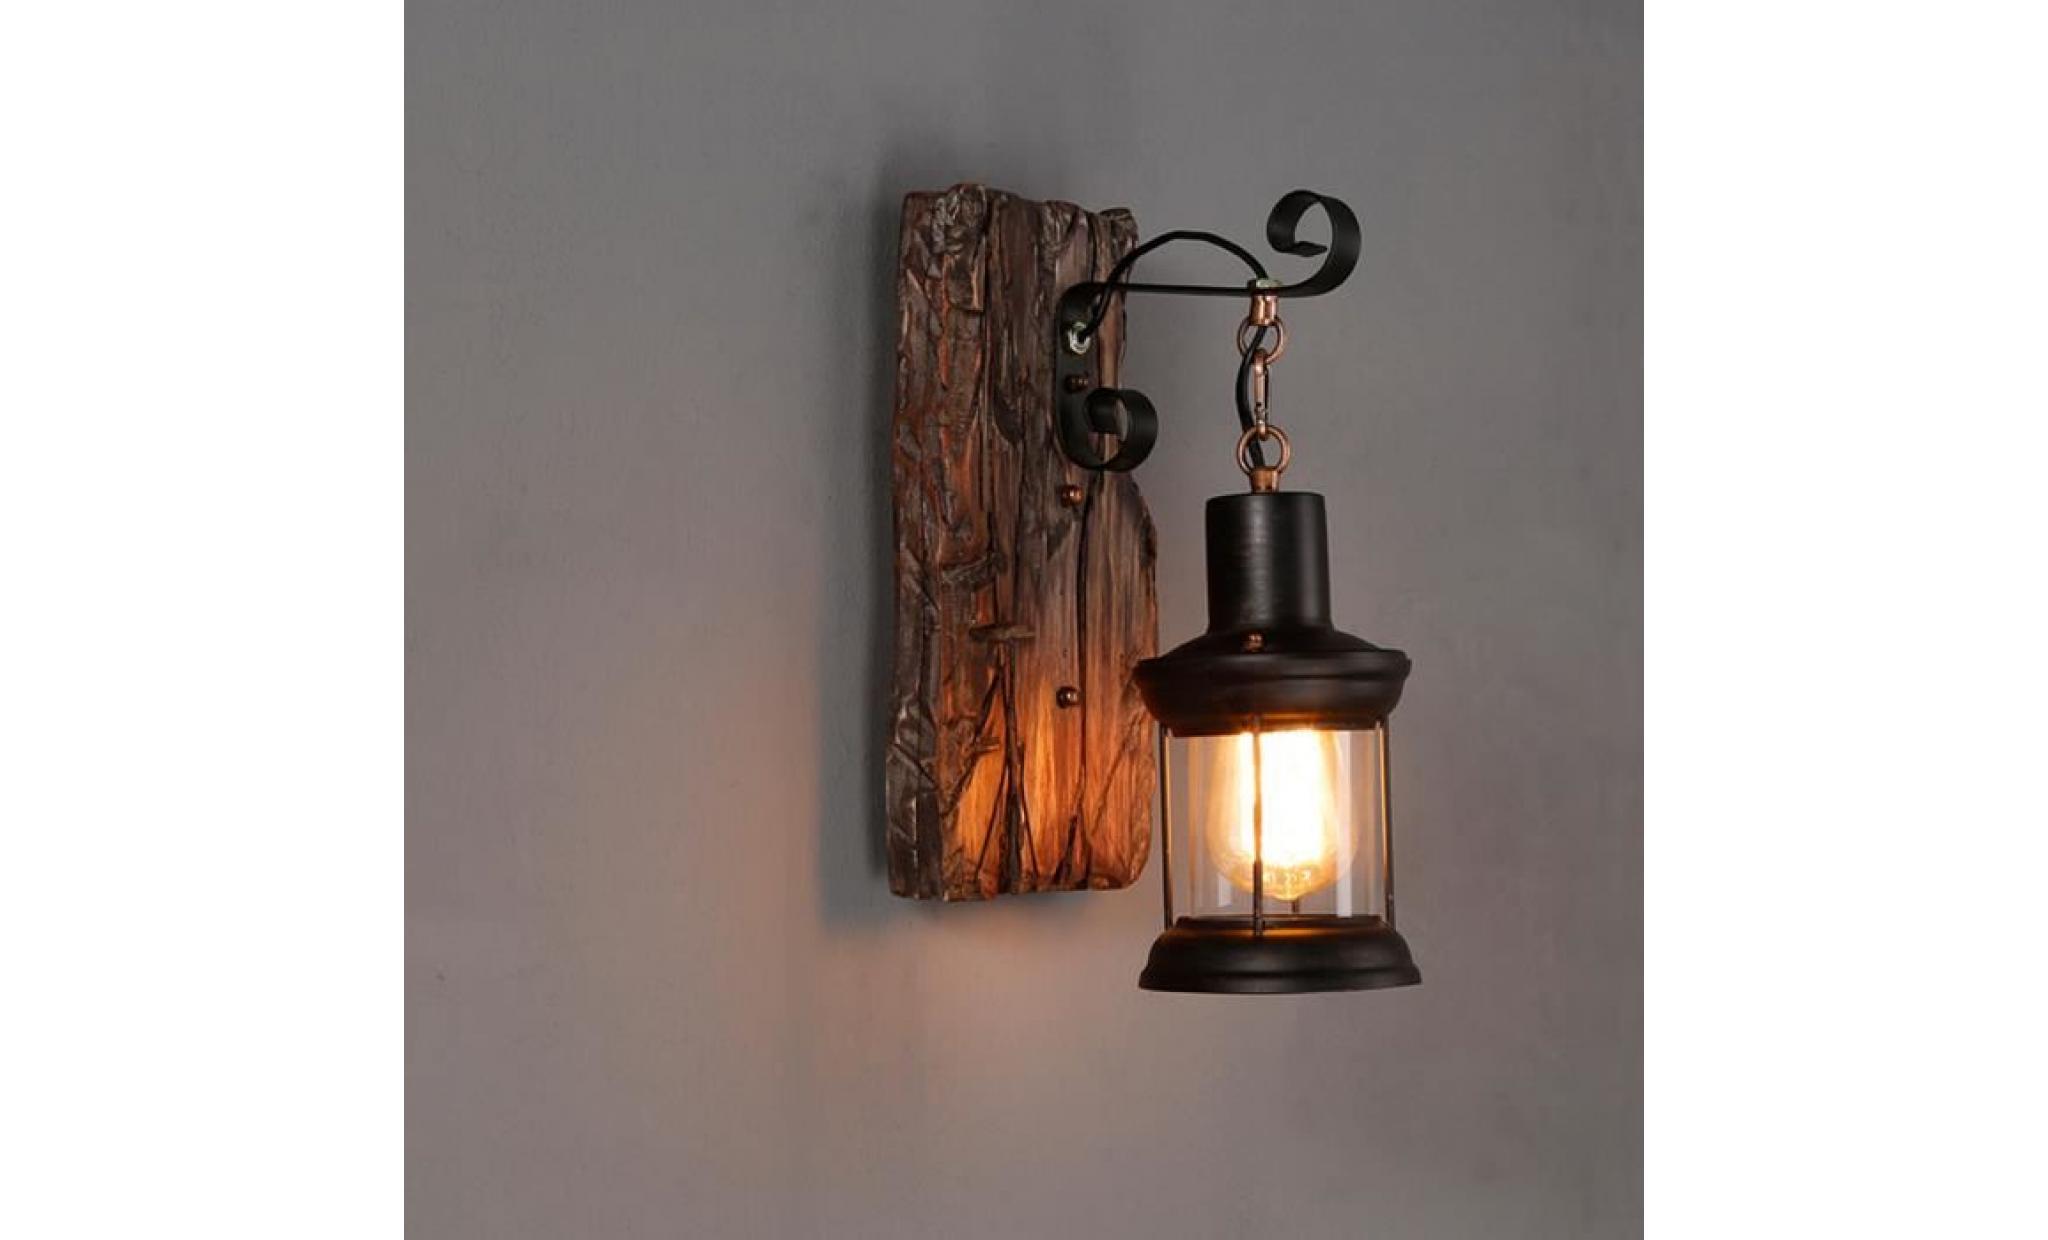 tempsa lumière e27 vintage lampe mural applique Éclairage ampoule fixture maison décor